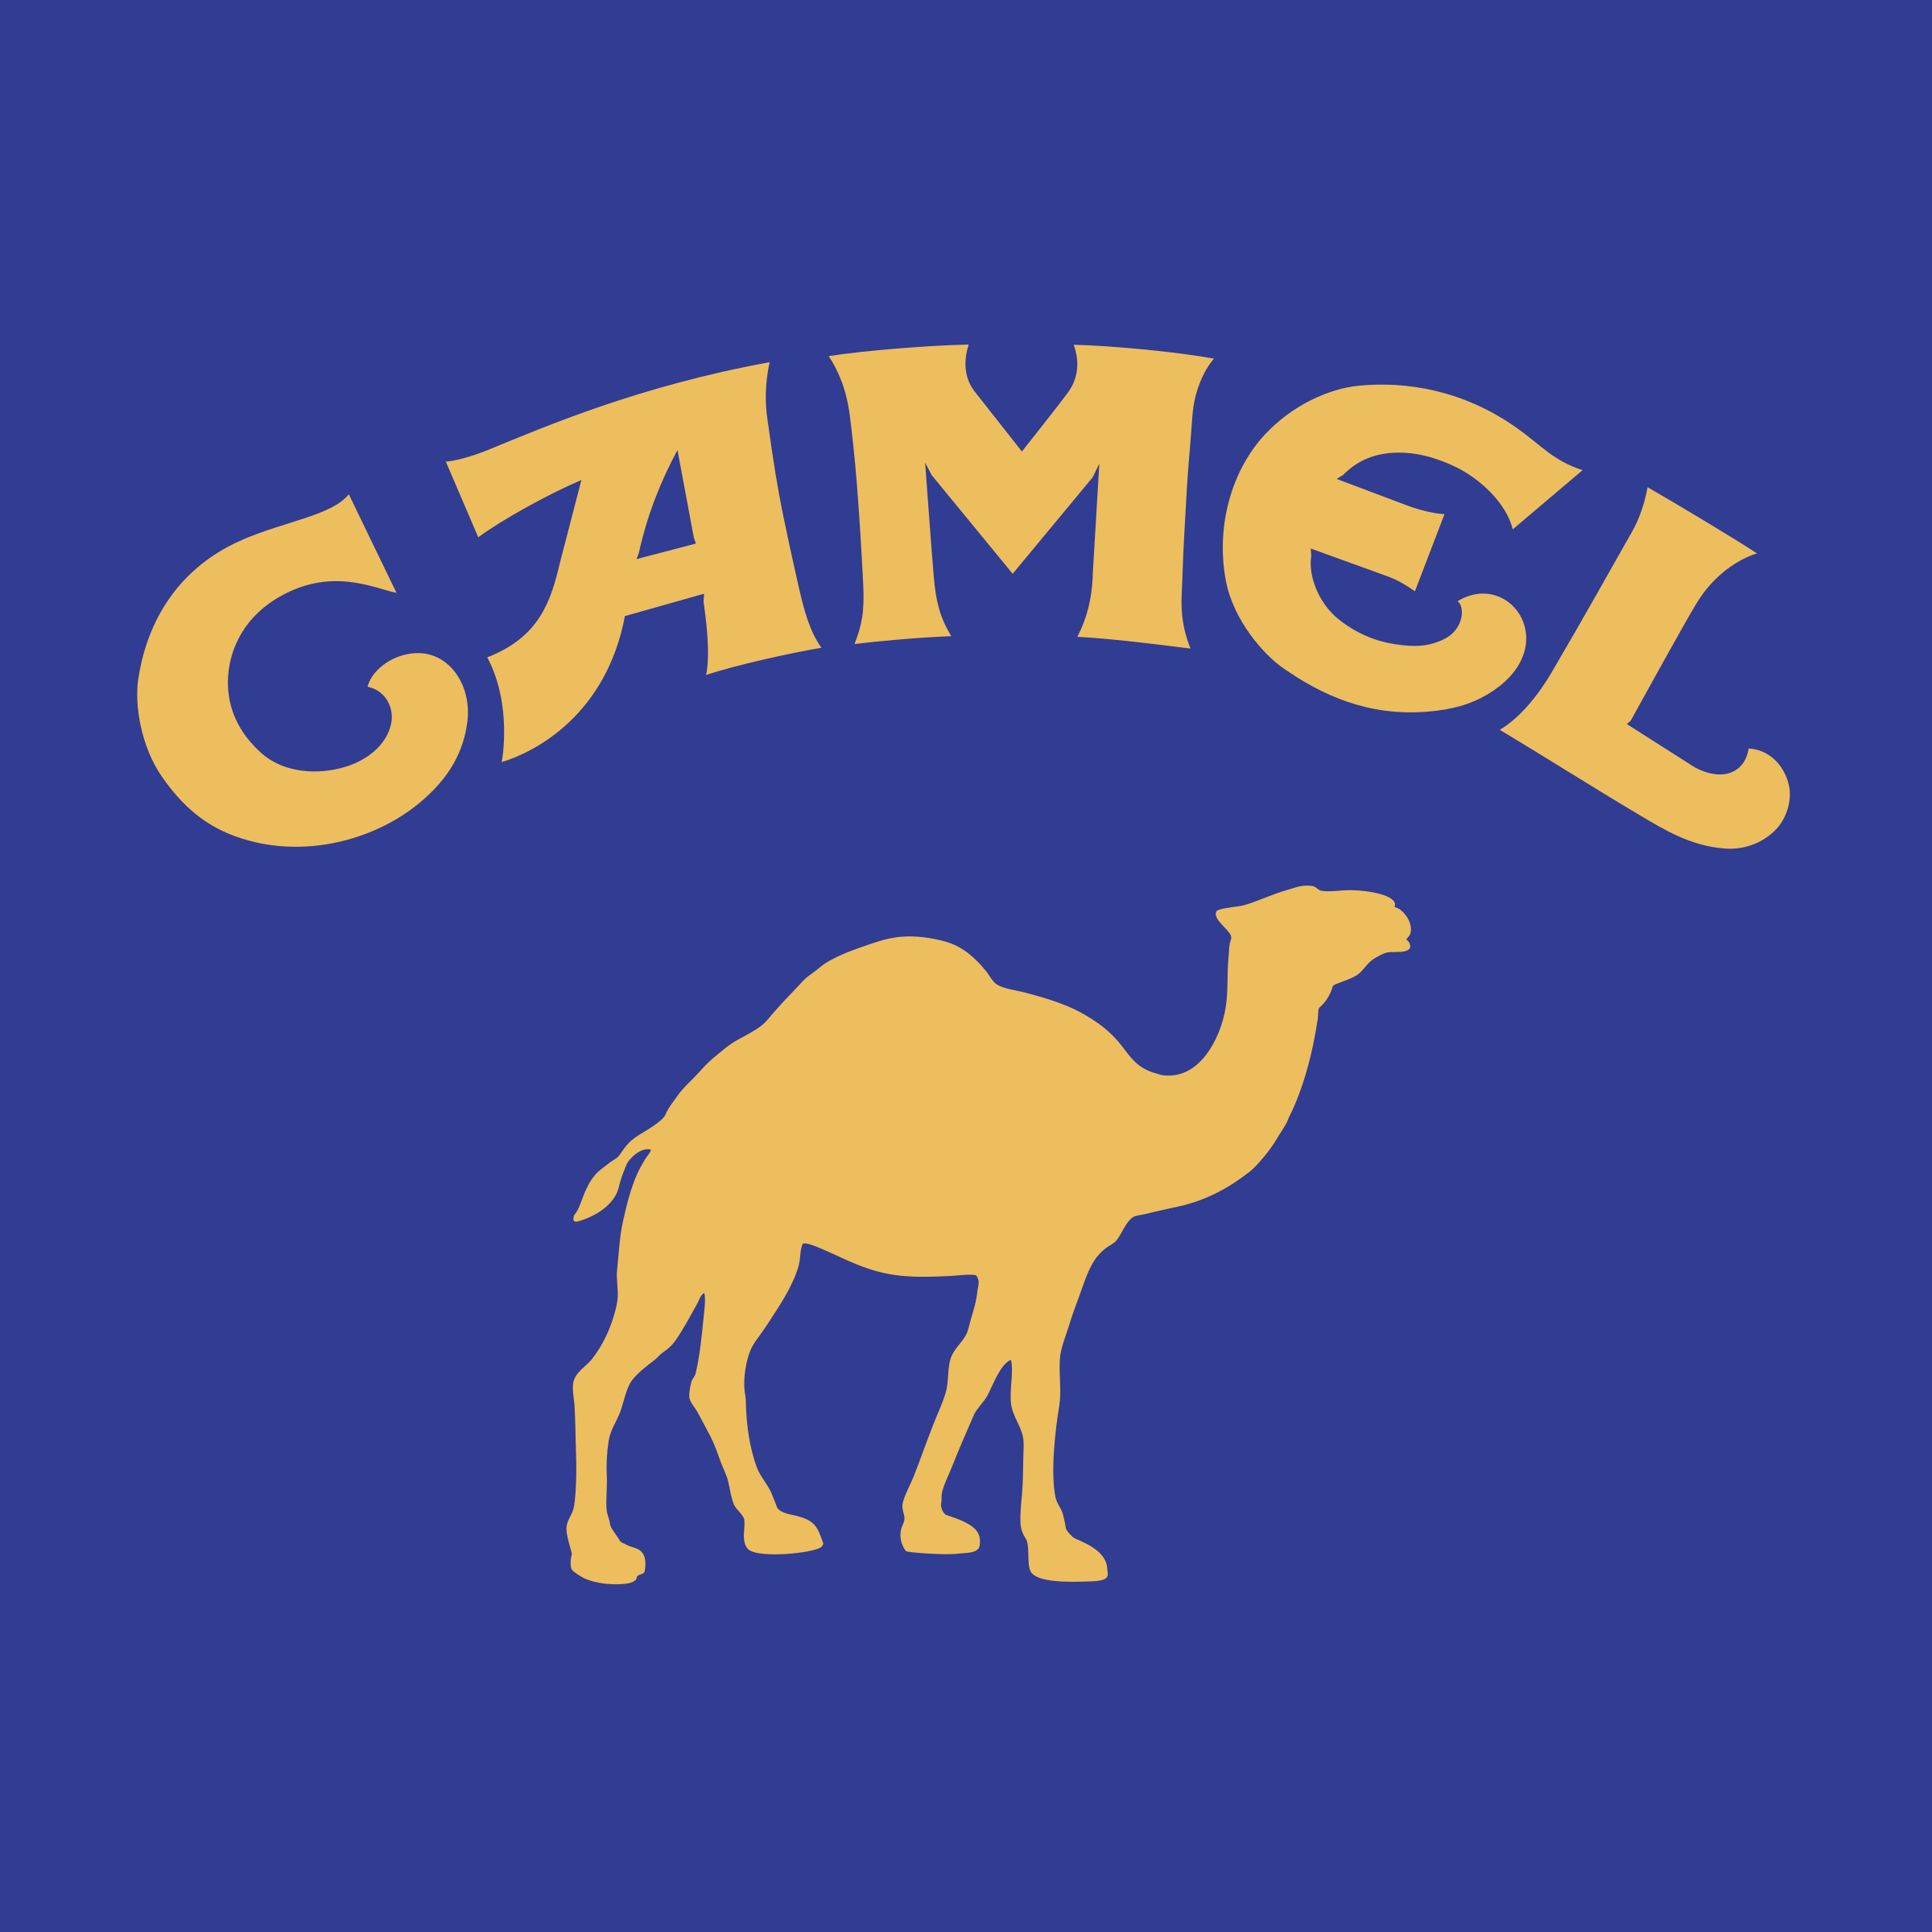 Camel Logo - Camel Logo PNG Transparent & SVG Vector - Freebie Supply